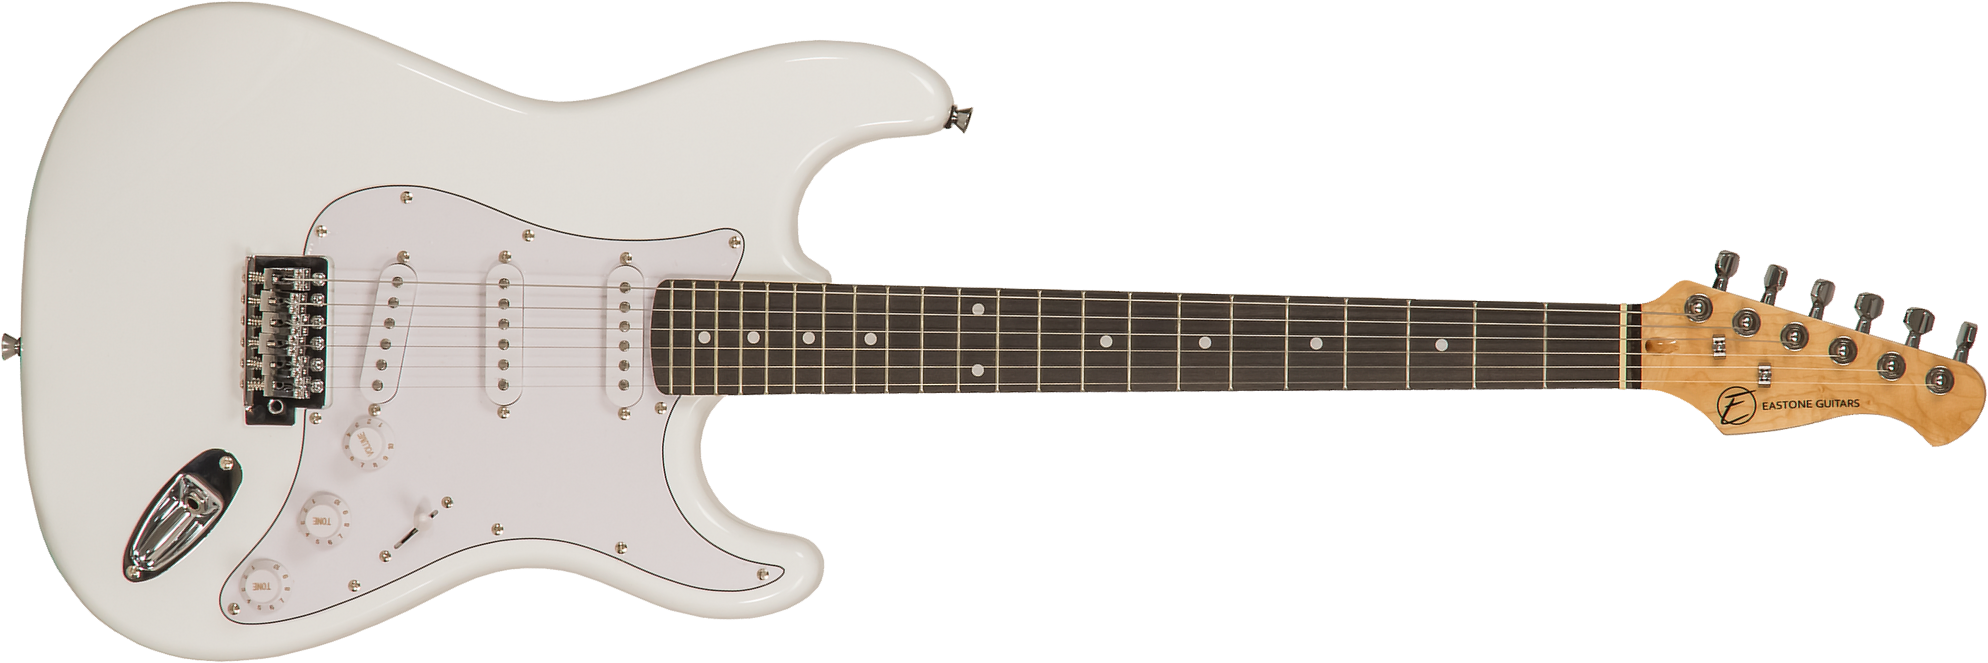 Eastone Str70 3s Trem Pur - Olympic White - Guitare Électrique Forme Str - Main picture